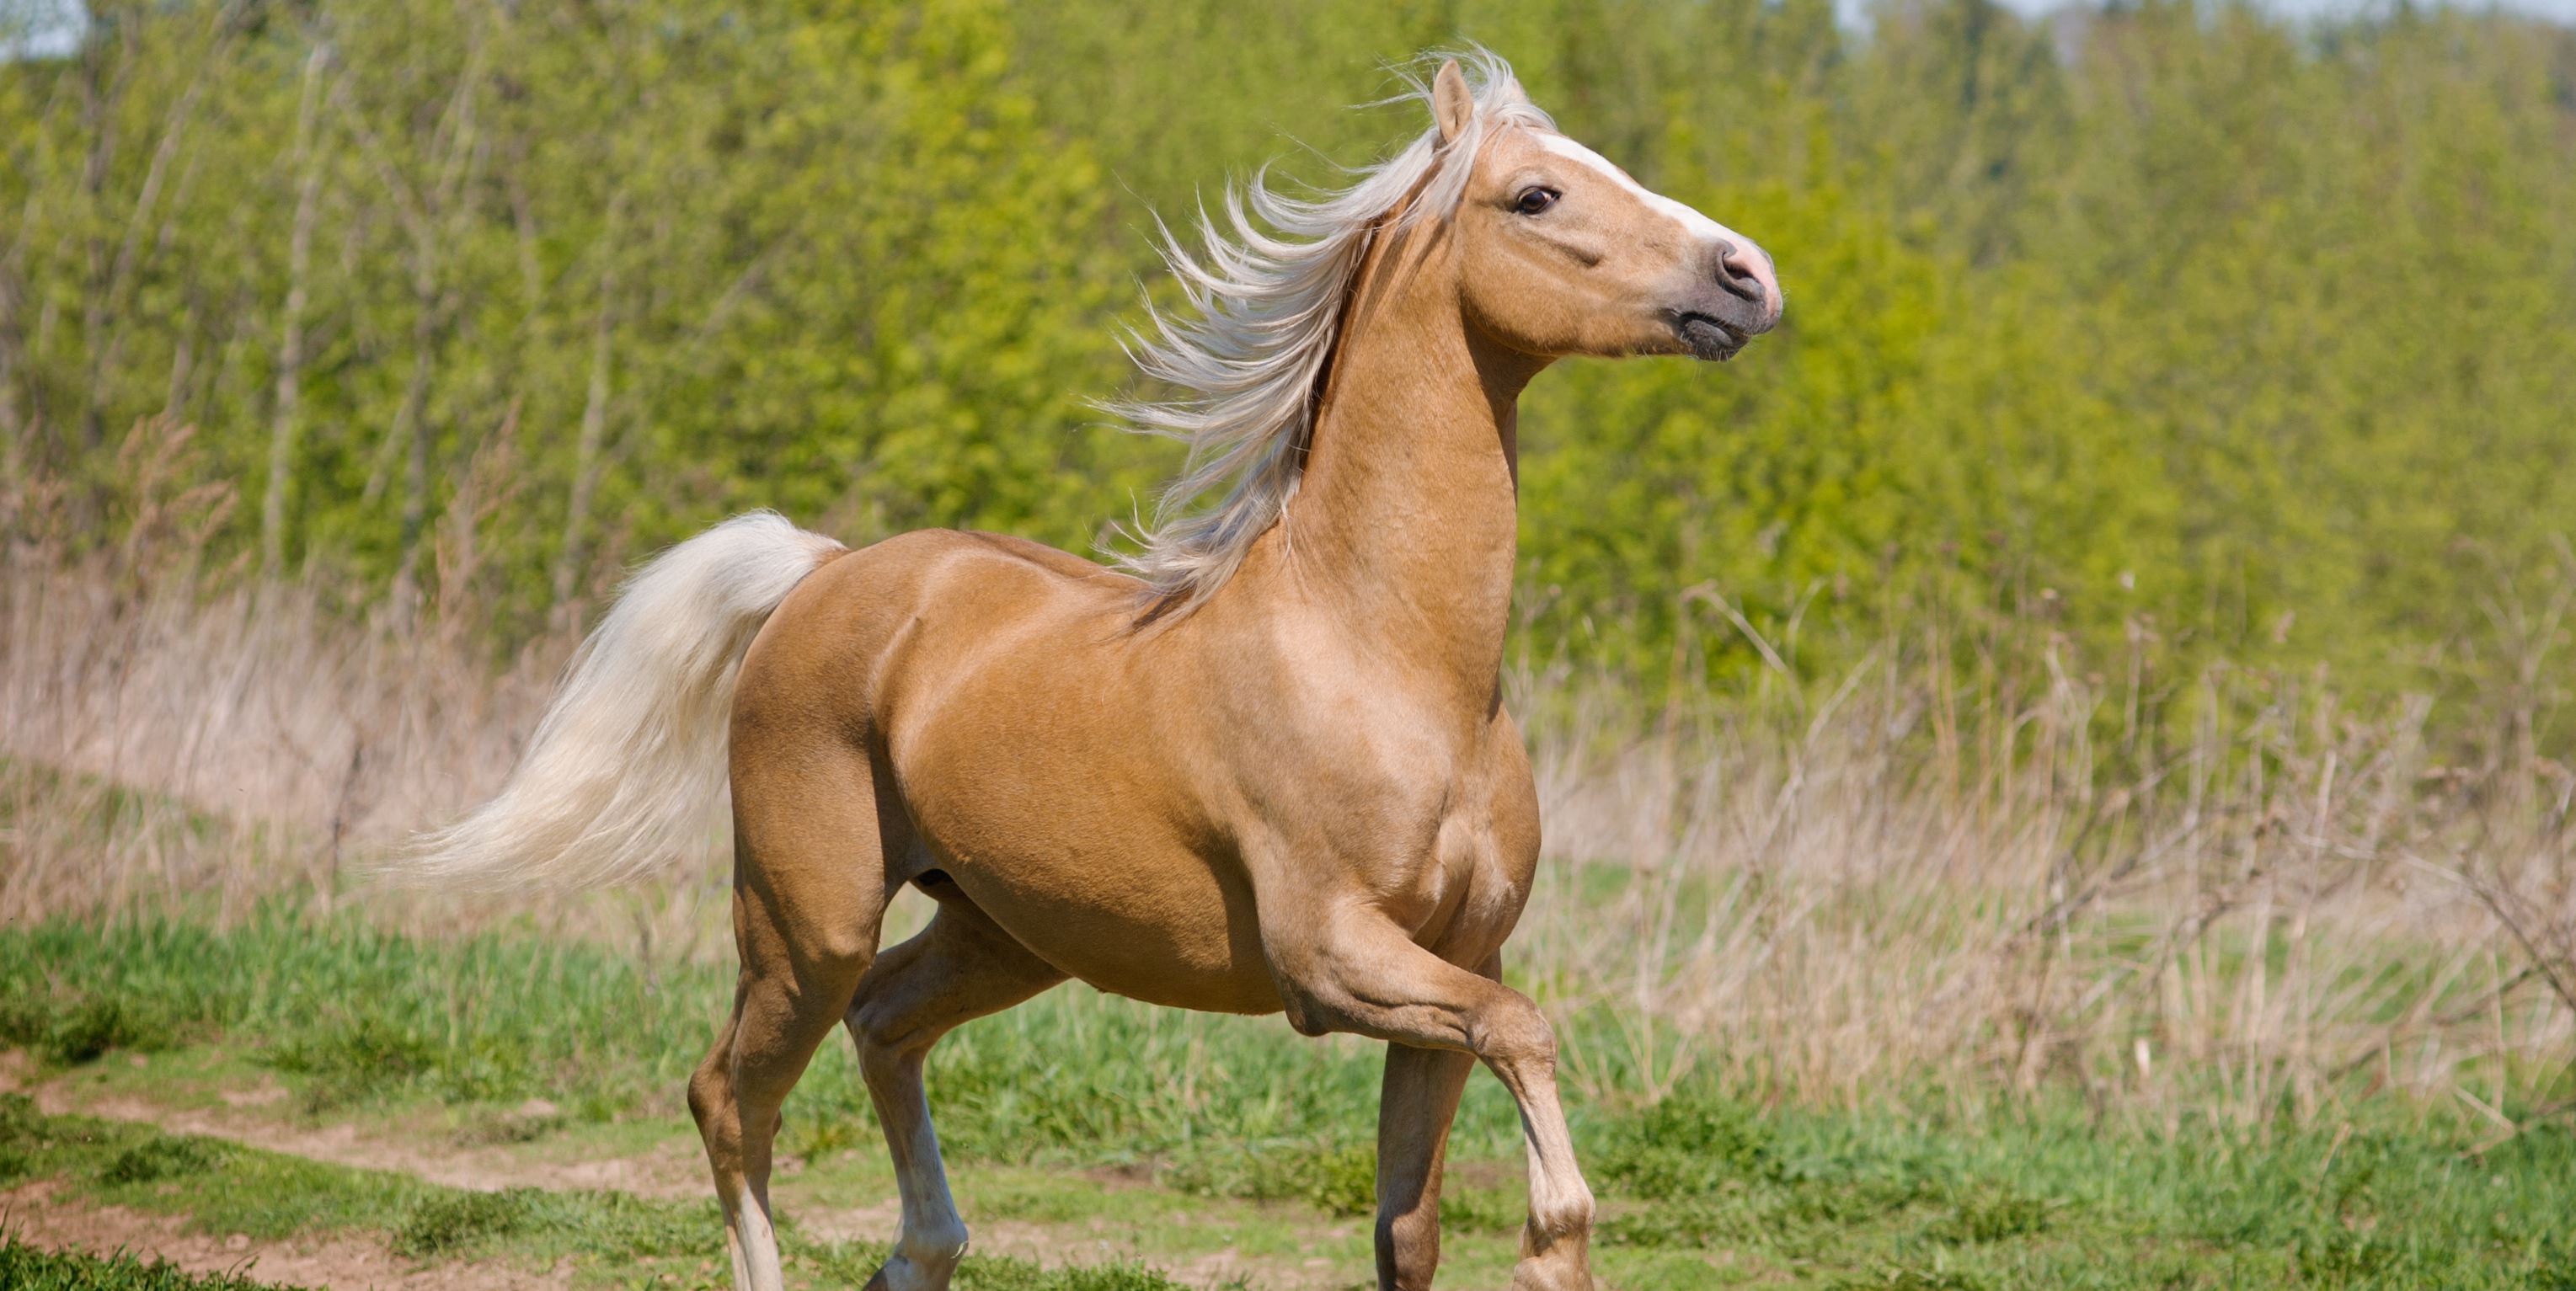 Лошадь шагает. Лошади породы Паломино. Лошадь идет. Конь шагает. Конь с поднятой ногой.